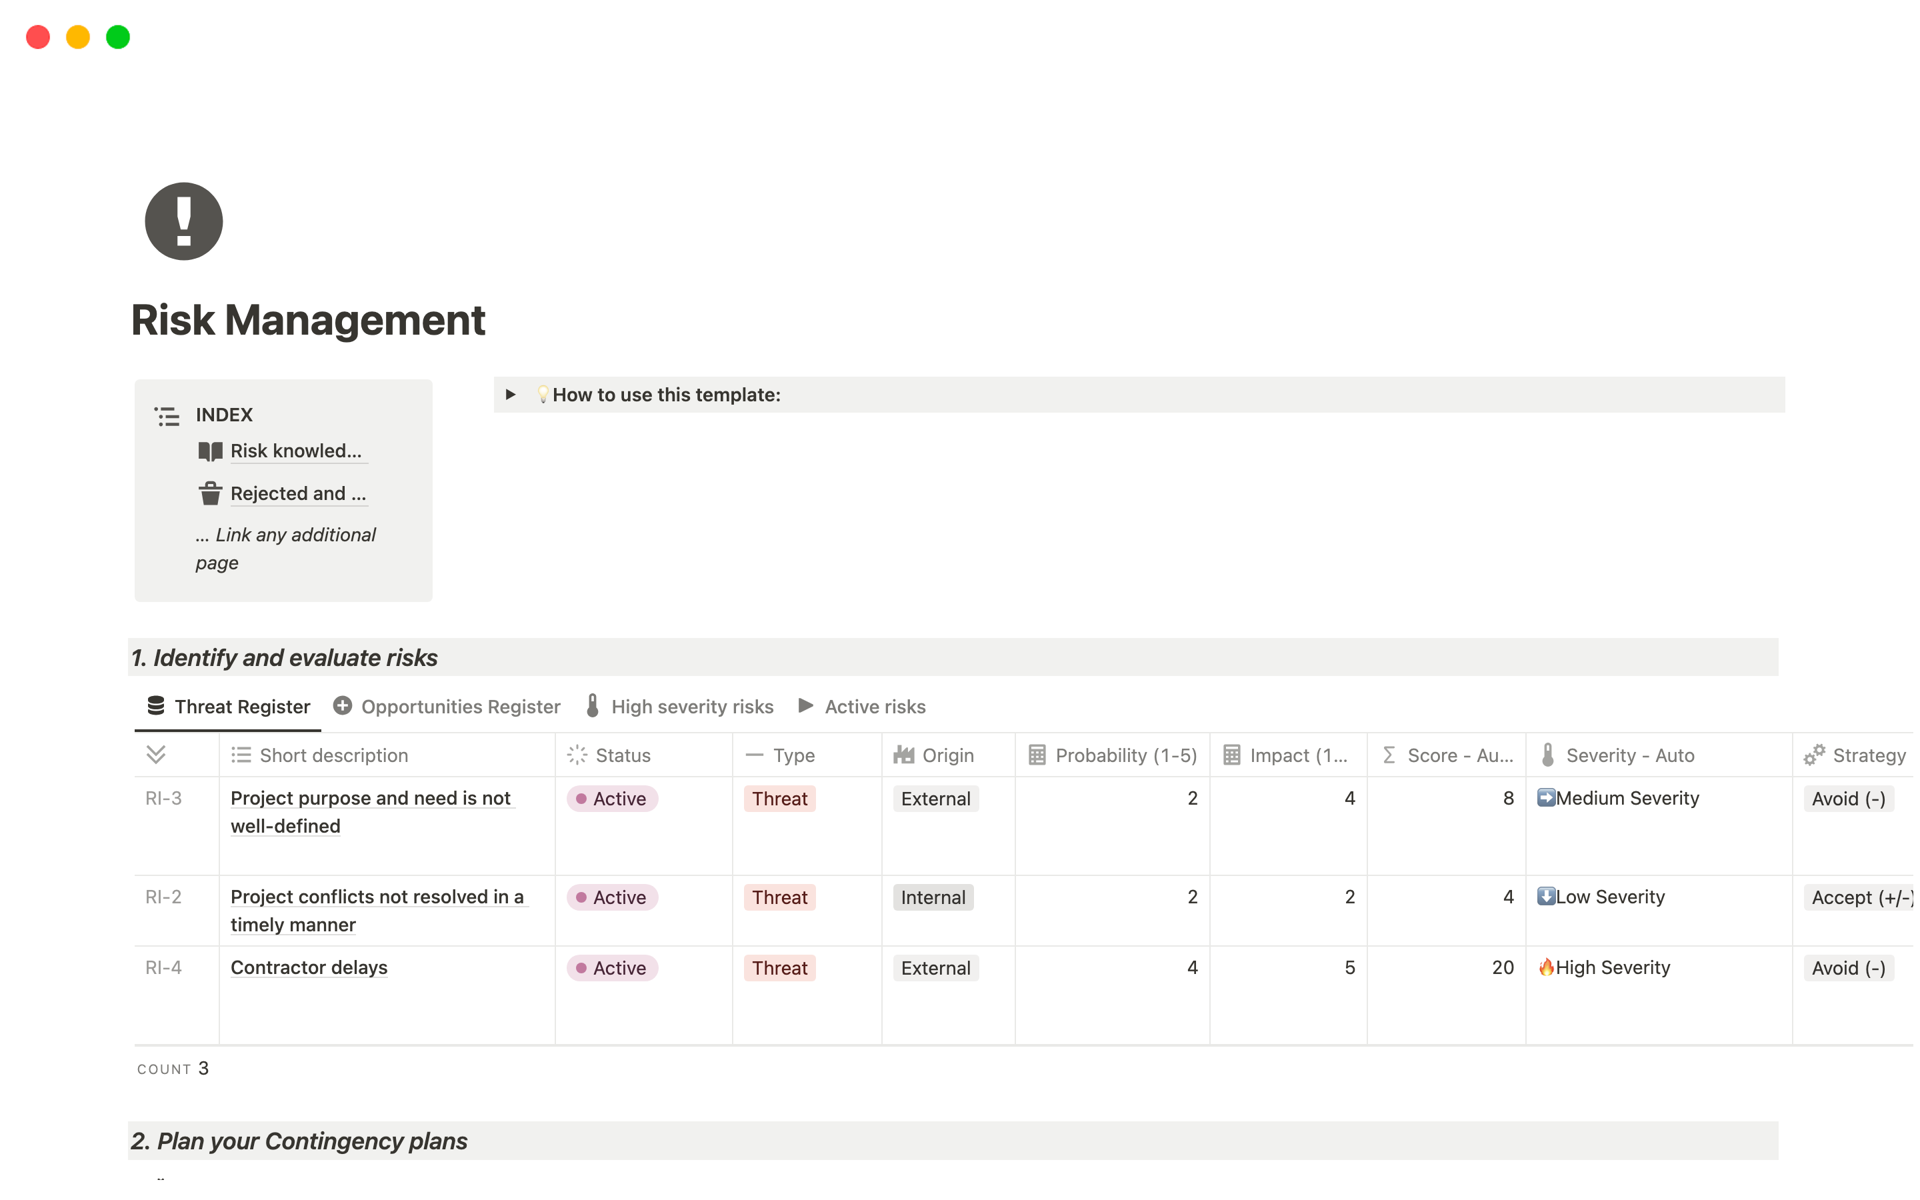 Captura de tela da coleção Top 10 SWOT Analysis Templates for Project Managers por Notion